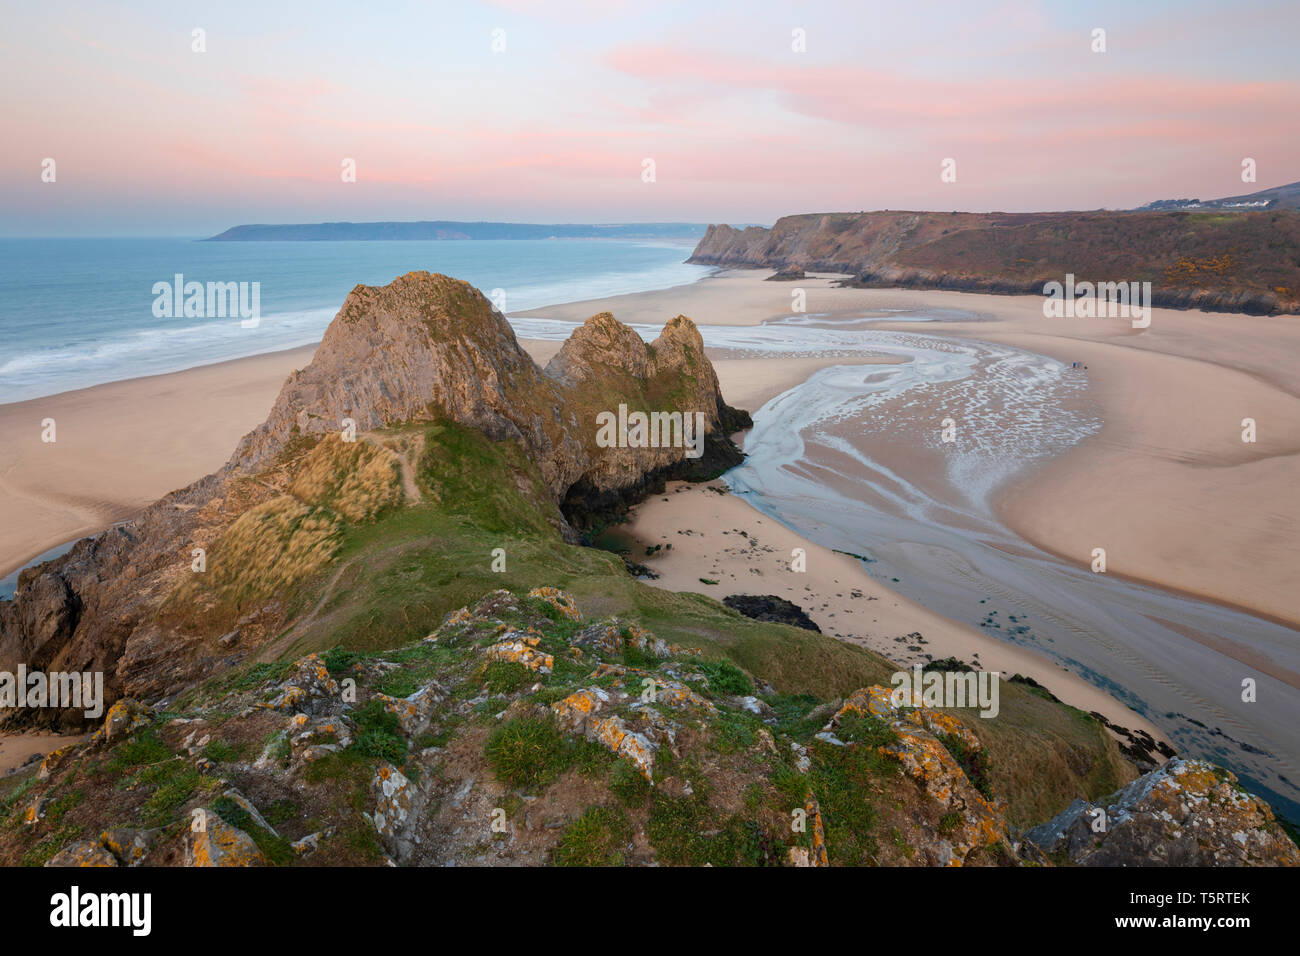 Trois falaises Bay au lever du soleil à marée haute, la péninsule de Gower, Swansea, West Glamorgan, Pays de Galles, Royaume-Uni, Europe Banque D'Images